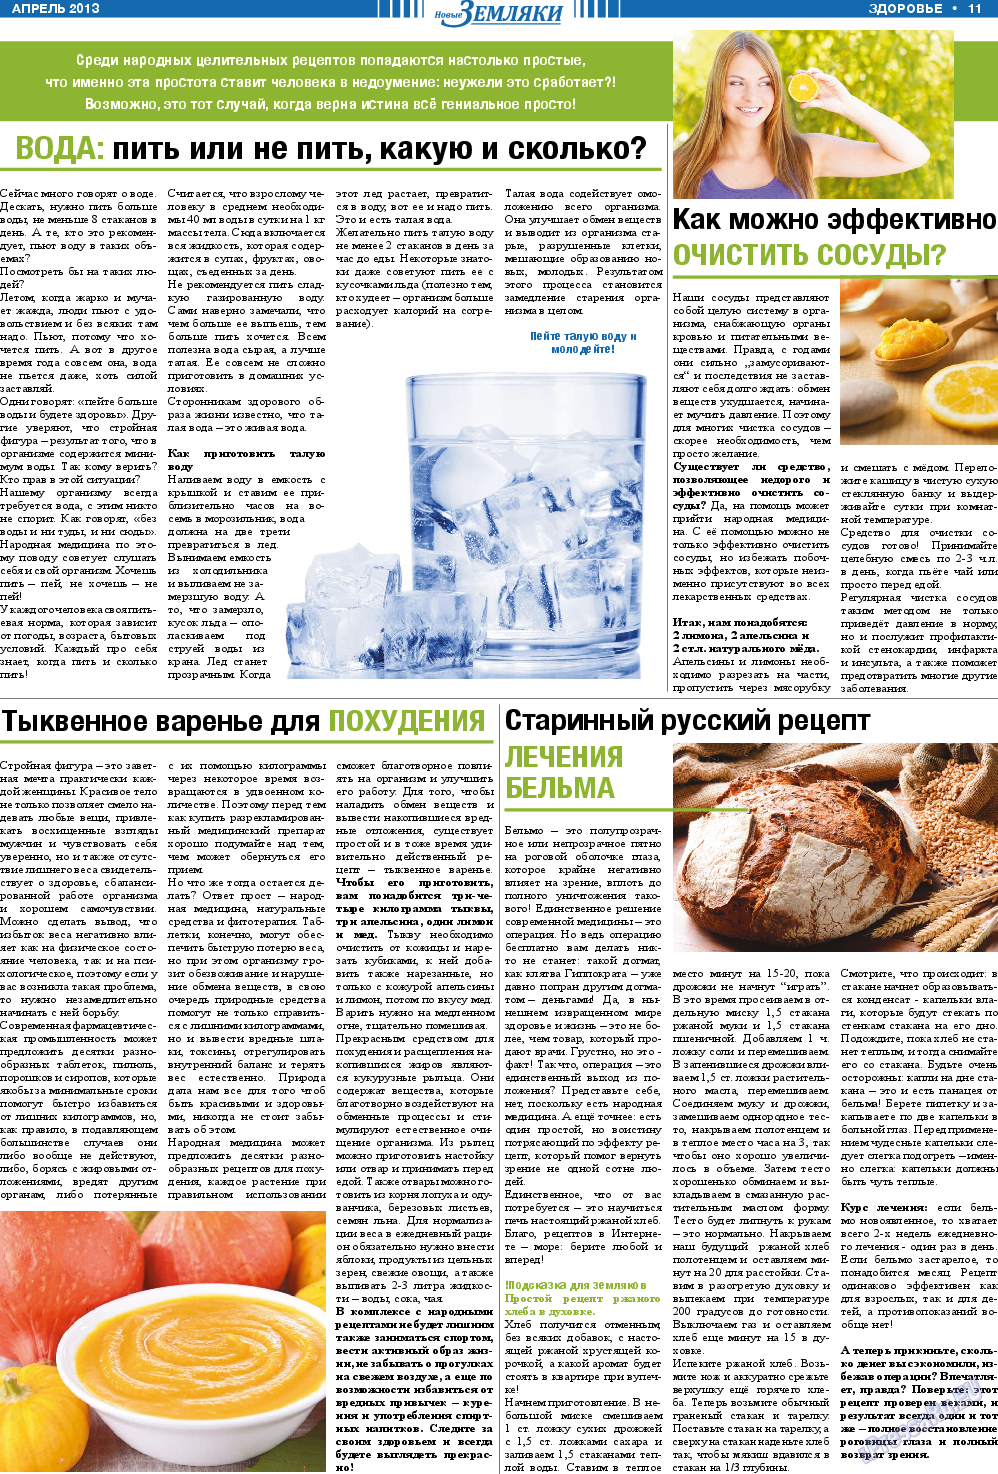 Новые Земляки, газета. 2013 №4 стр.11